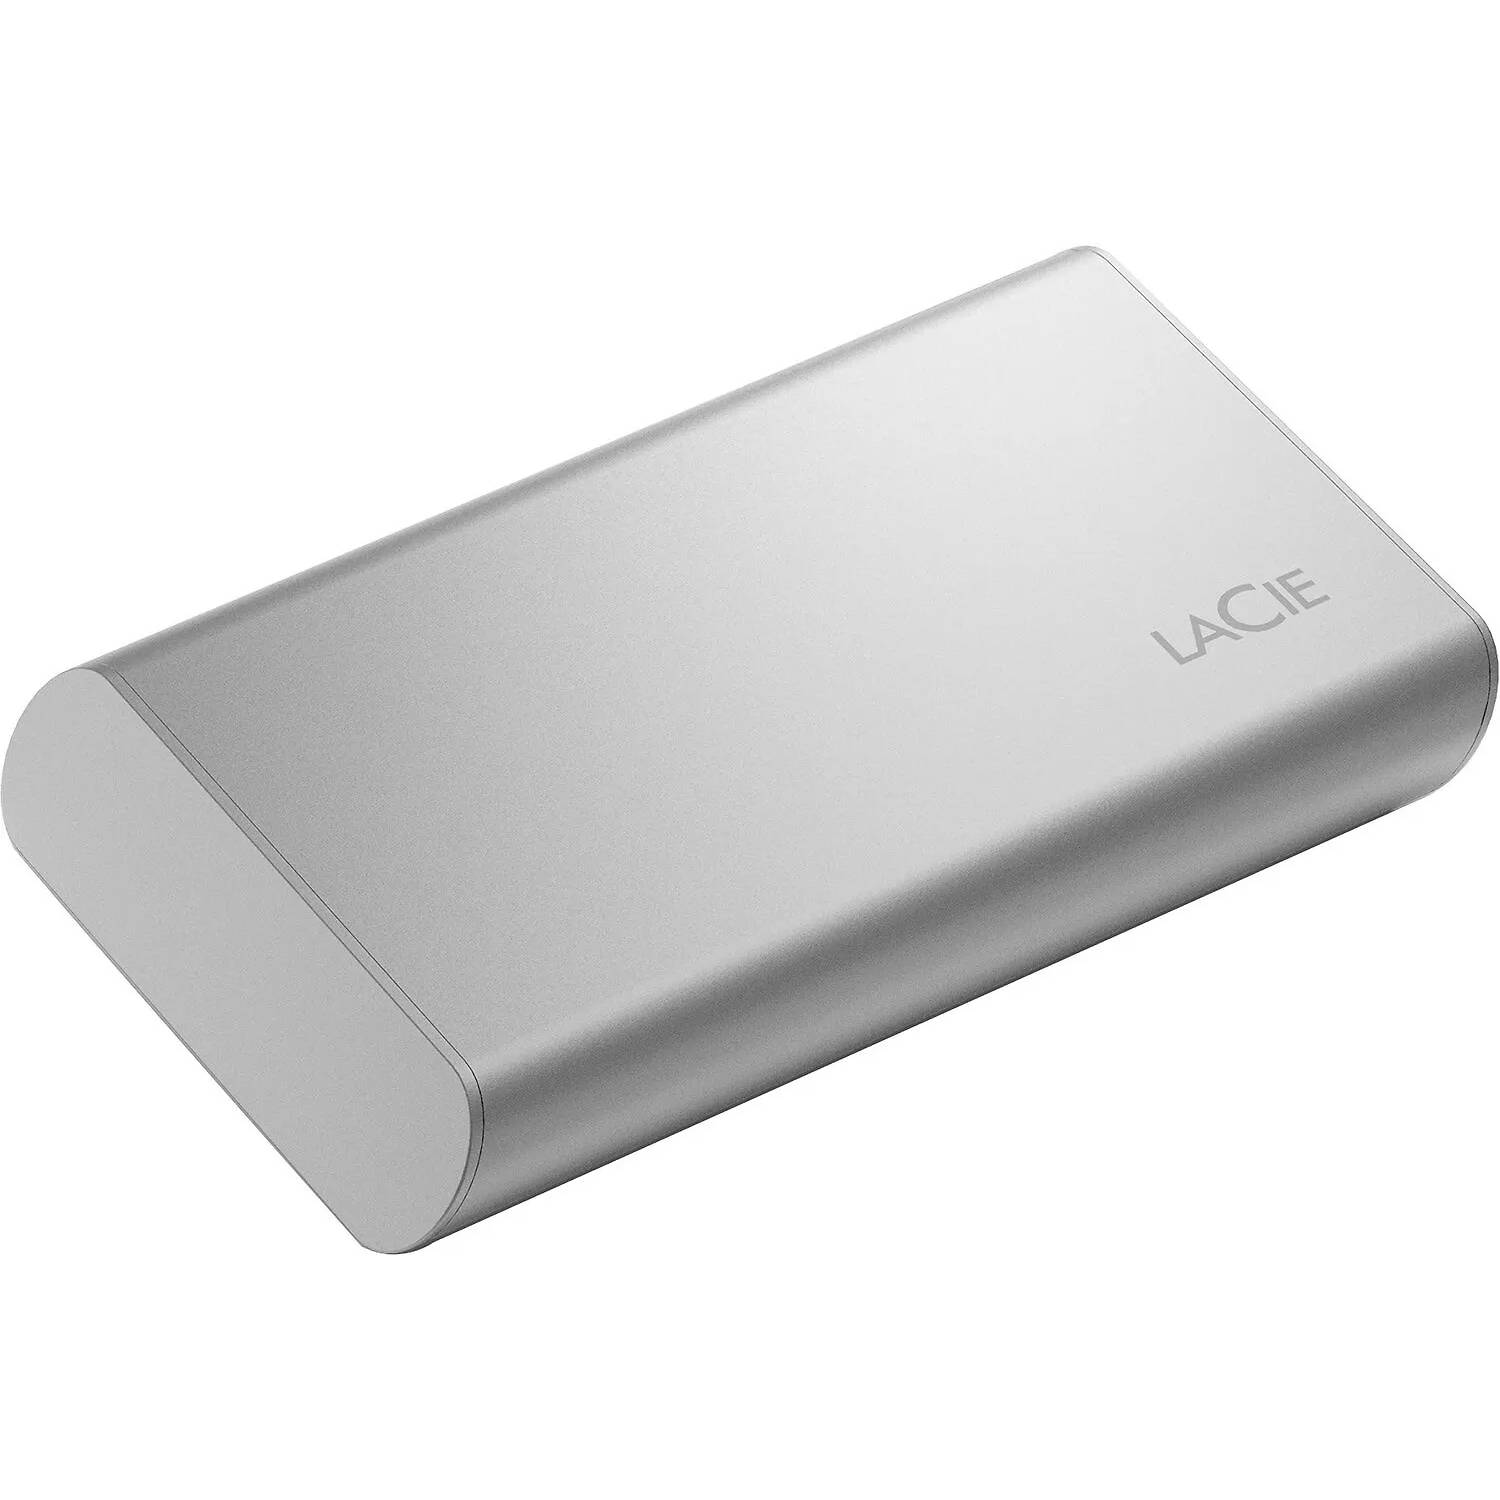 Внешний накопитель LaCie Portable SSD v2, 1 Тб, серый